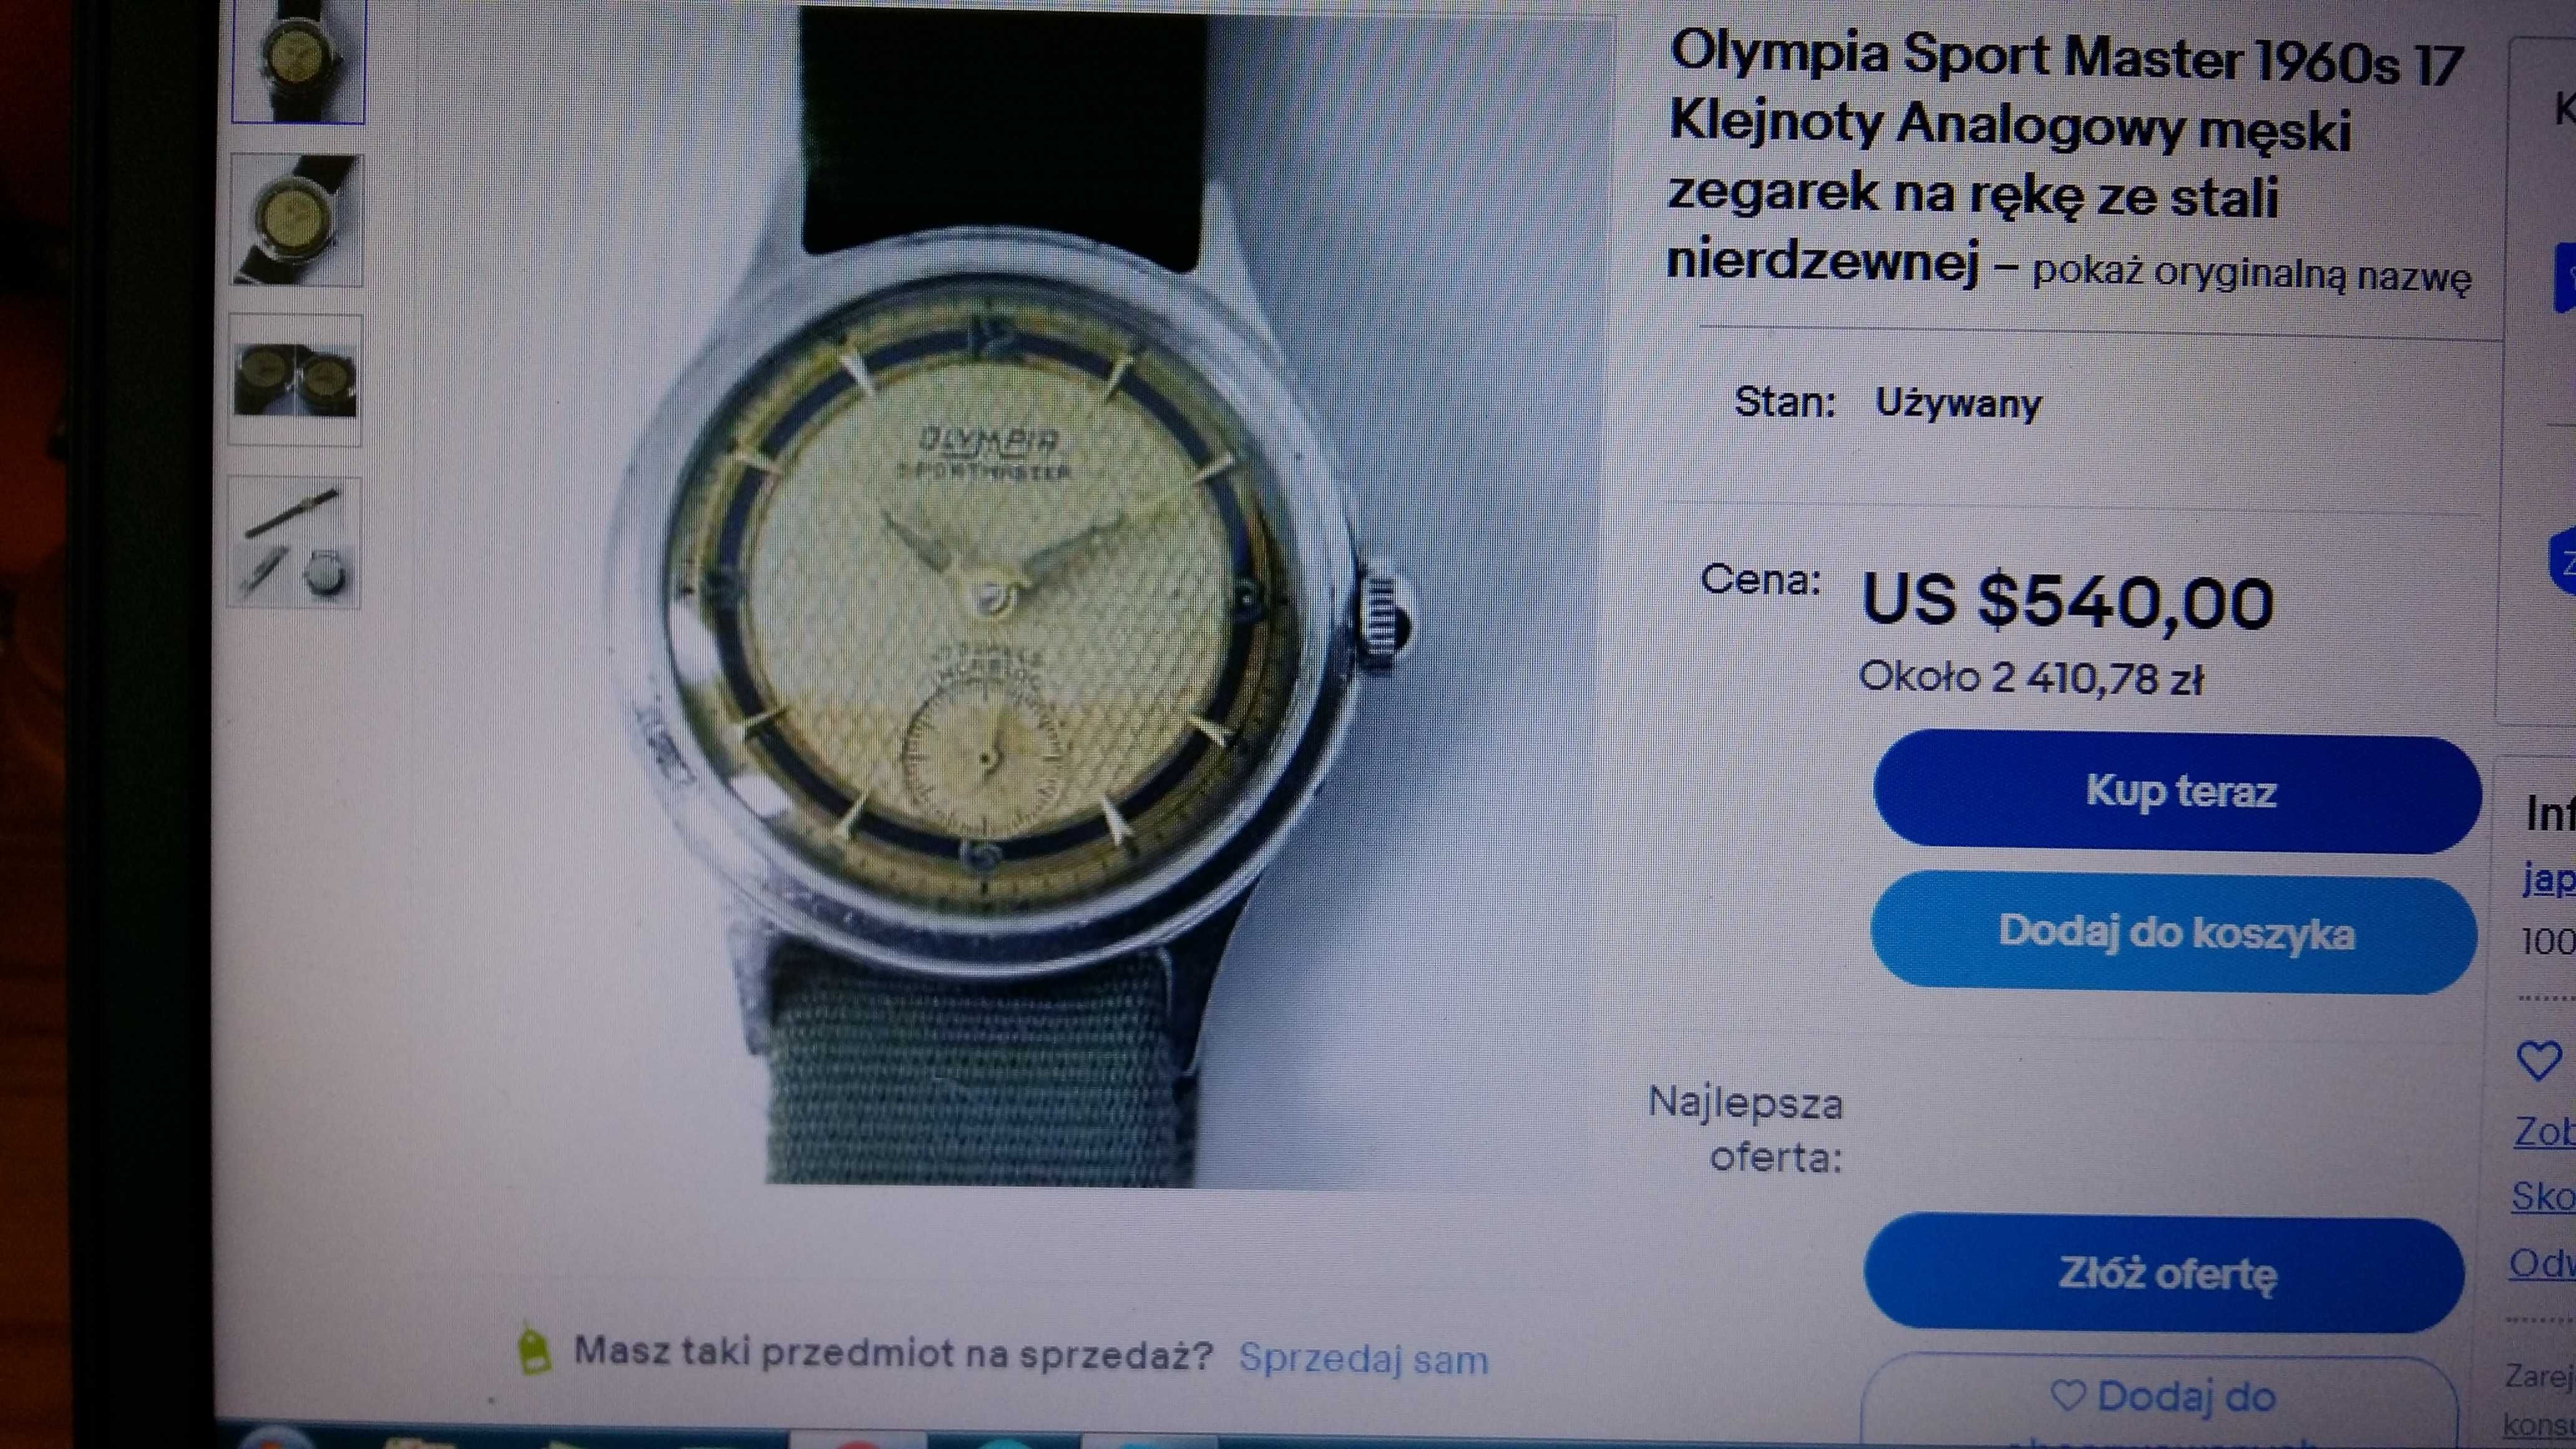 Zegarek Olympia Sport Master Swiss stal nie srebro.